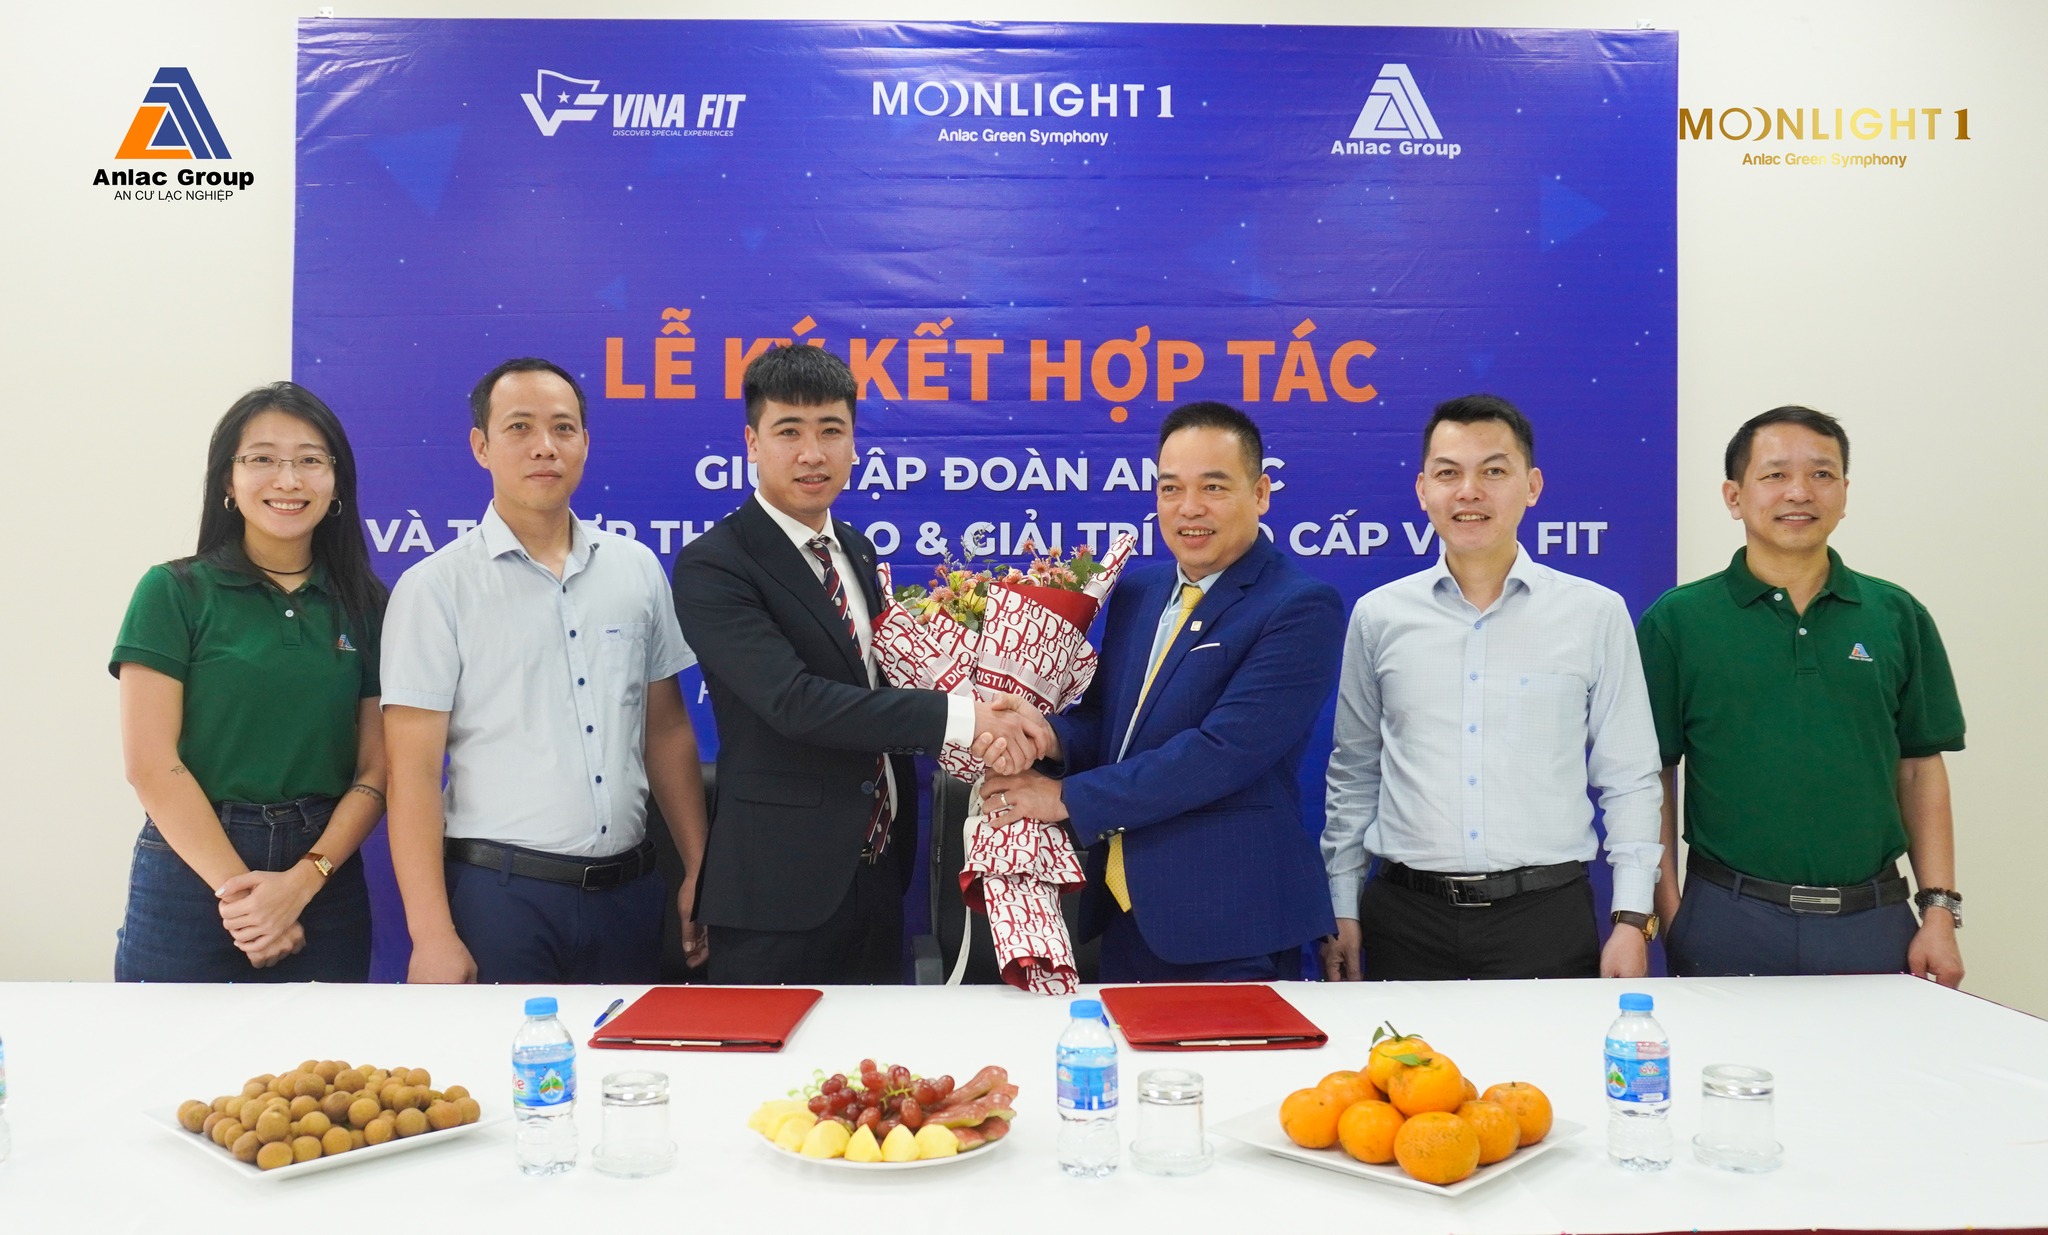 Tập đoàn An Lạc chính thức ký kết hợp tác với Tổ hợp Thể thao & Giải trí cao cấp Vina Fit tại Moonlight 1